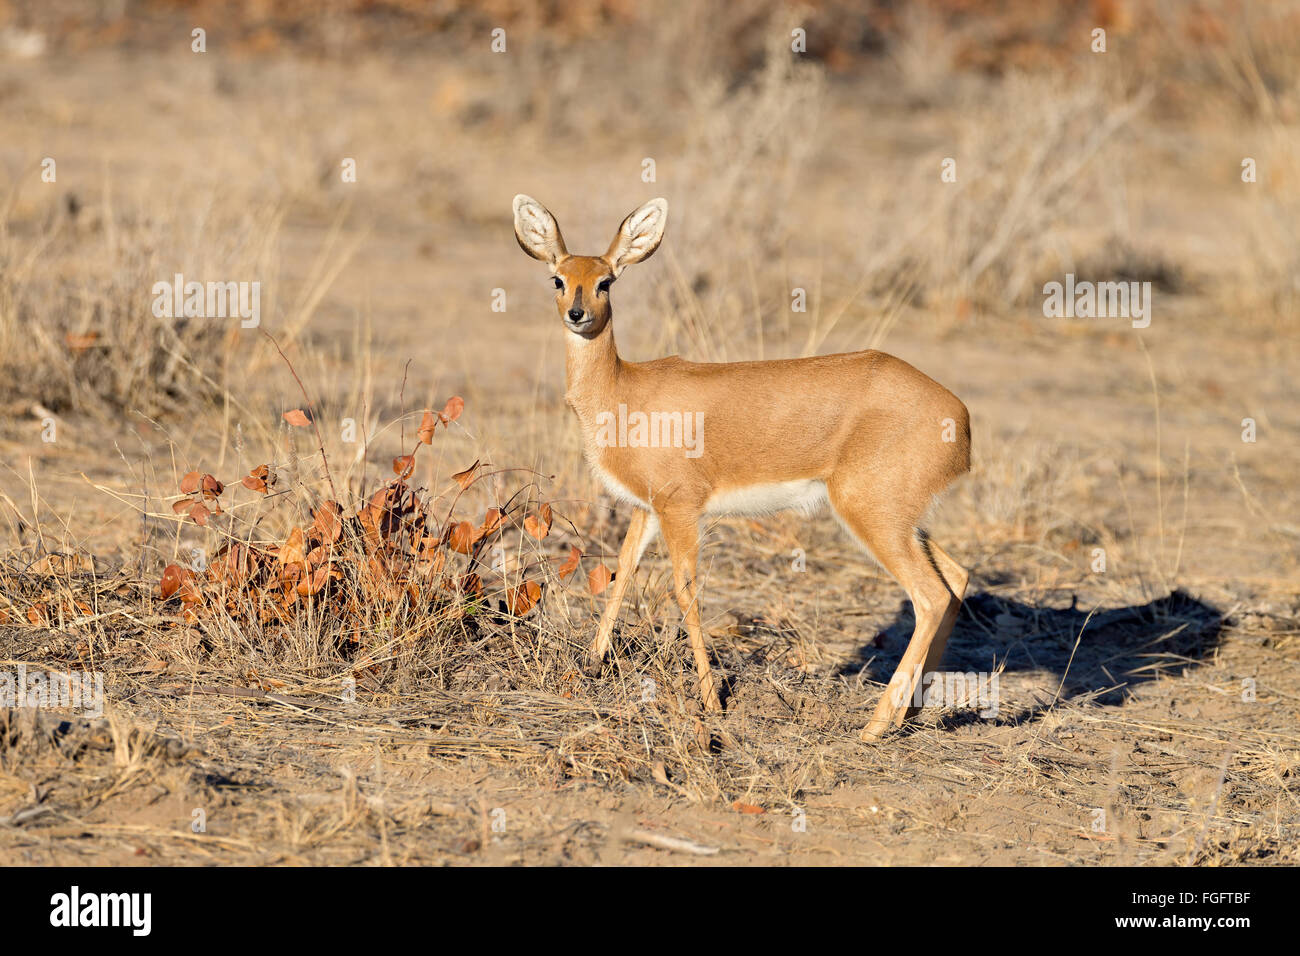 Female steenbok antelope in Etosha National Park, Namibia Stock Photo